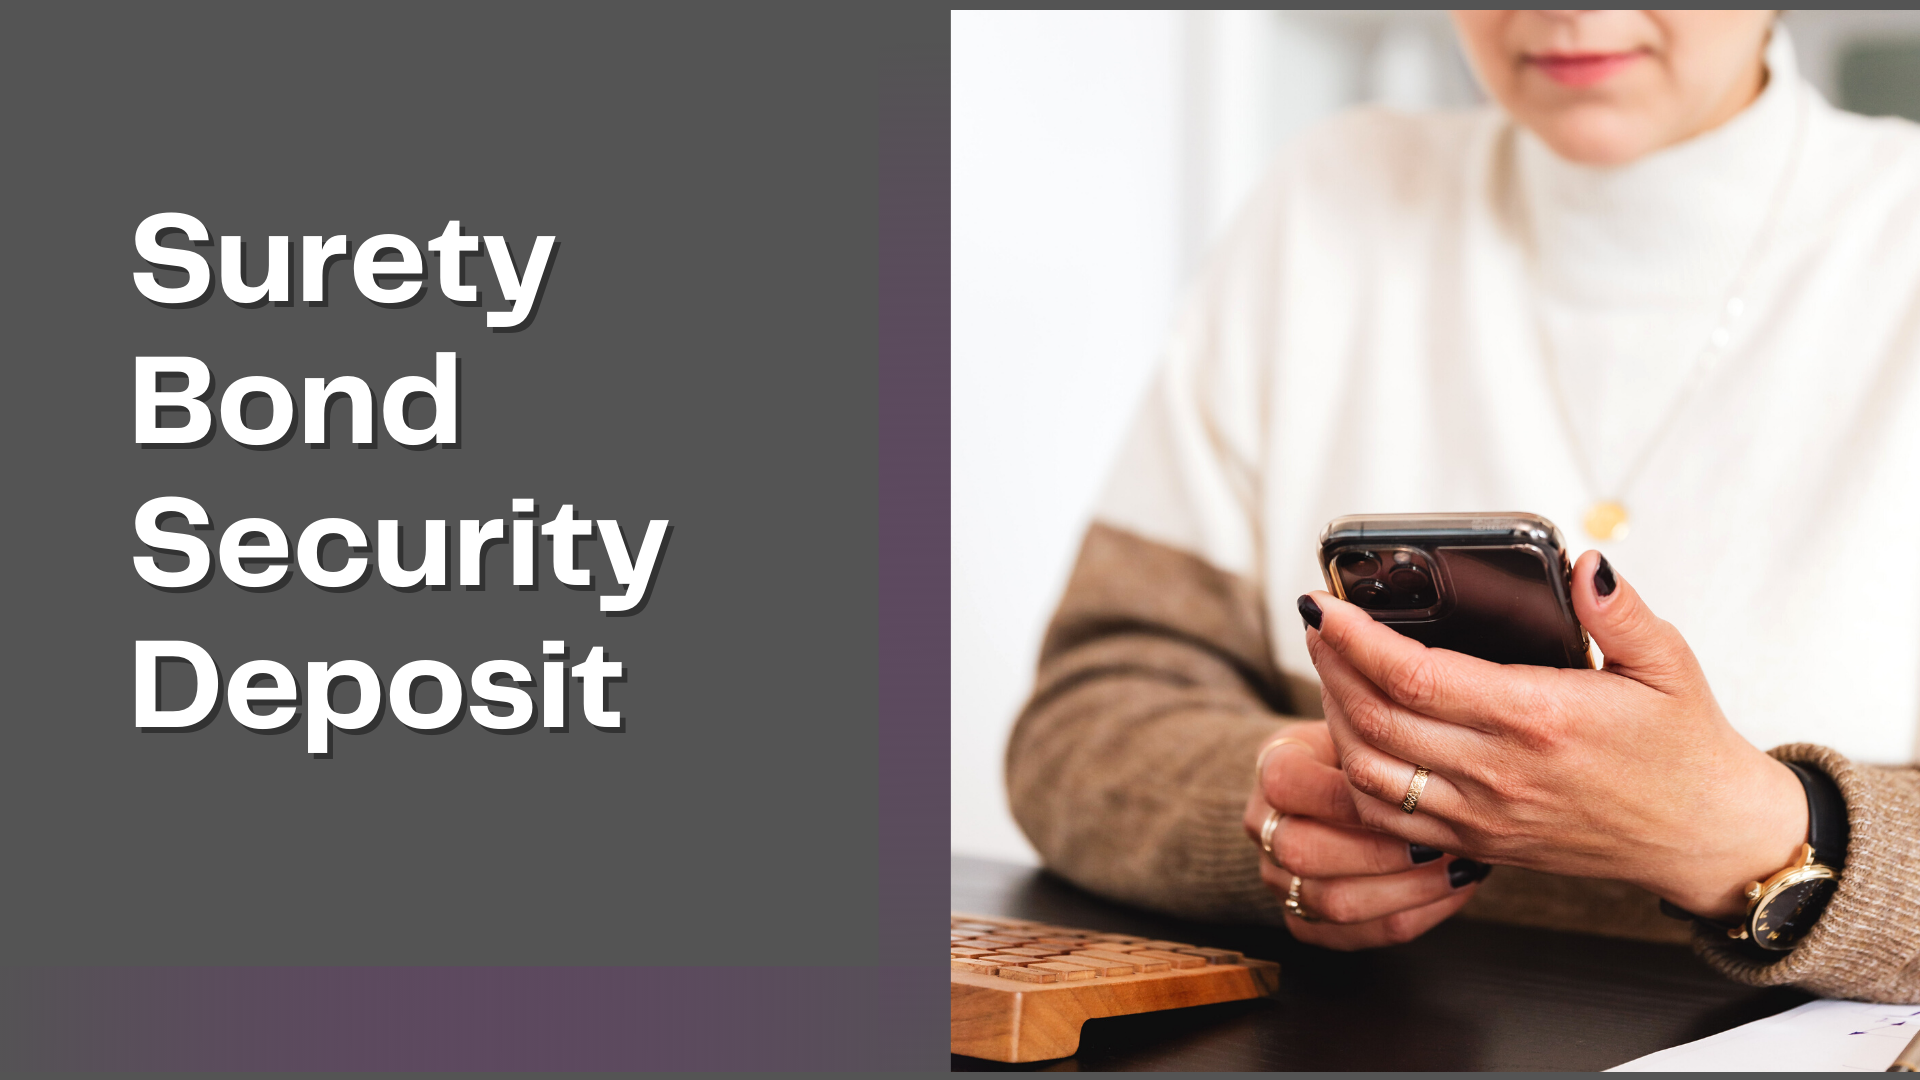 Surety Bond-Surety Bond Security Deposit